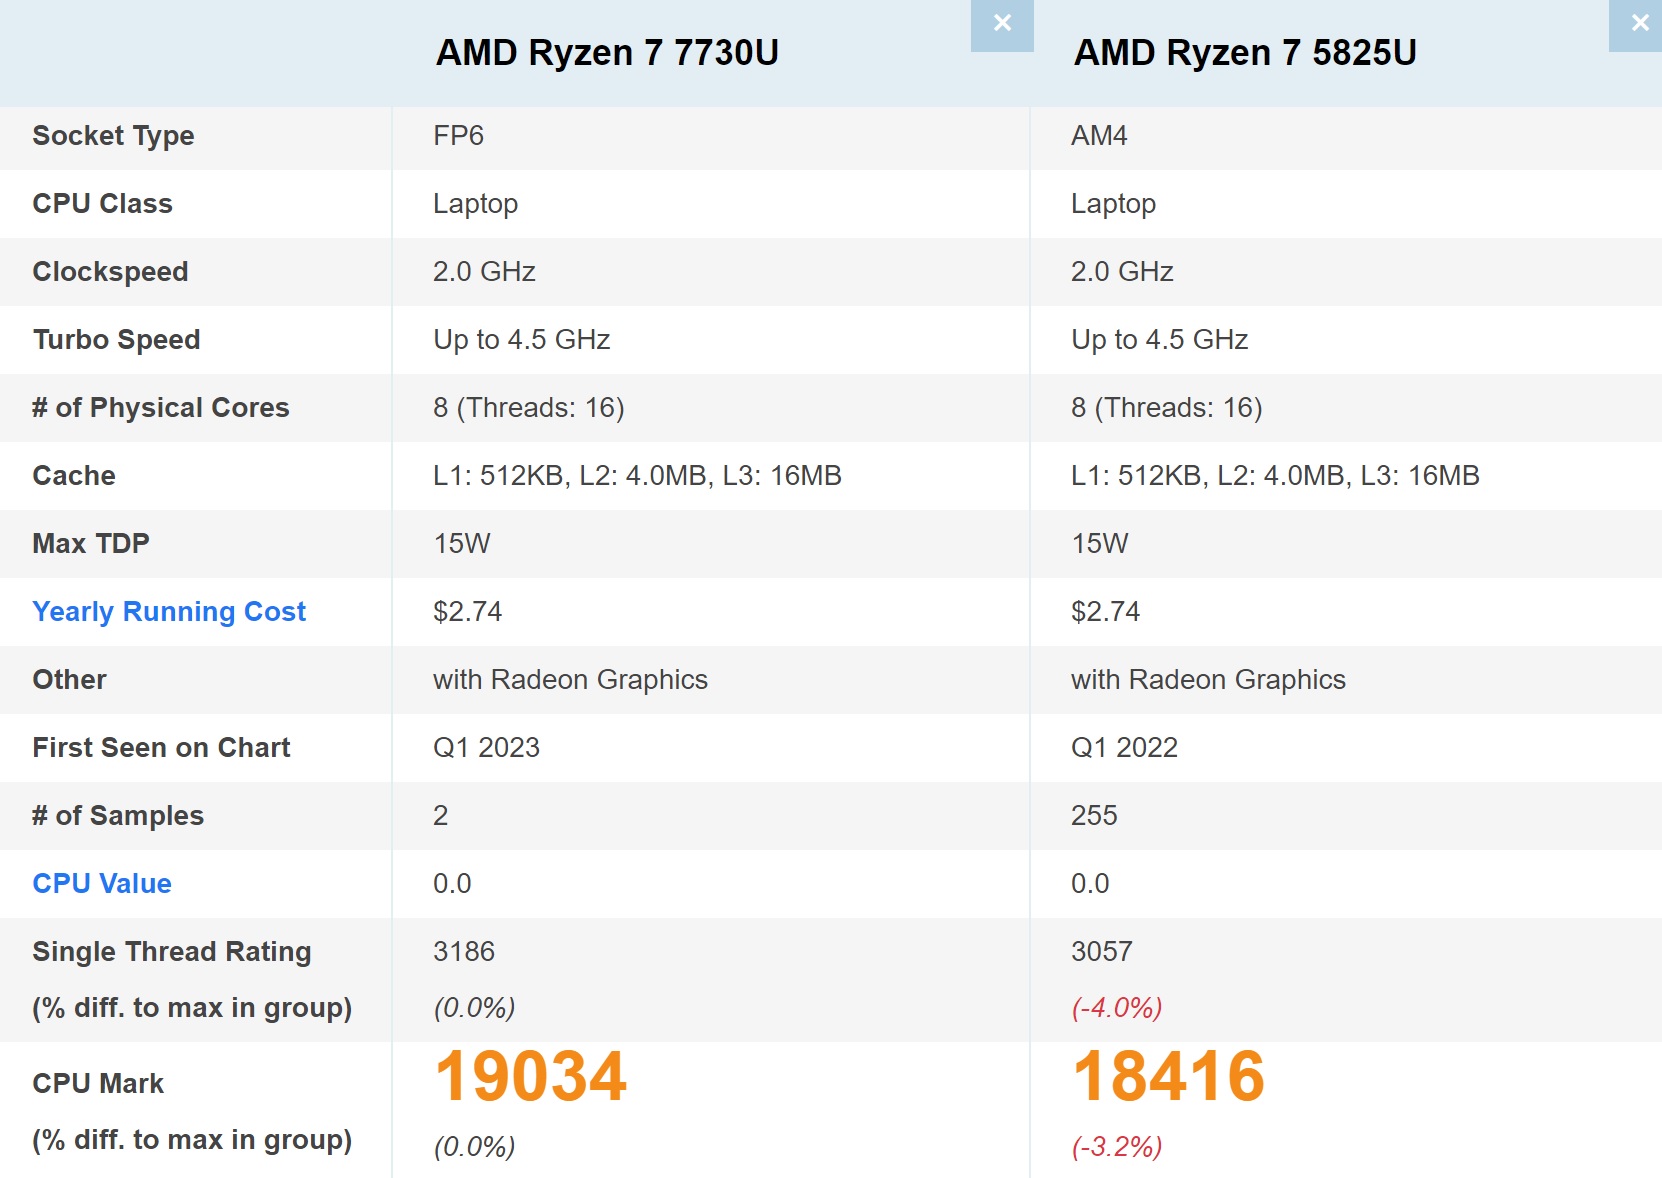 7730u comparison หลุดผลทดสอบ AMD Ryzen 7 7730U รหัส “Bercelo R” แรงกว่า Ryzen 7 5825U ประมาณ 4% ในการทดสอบ PassMark